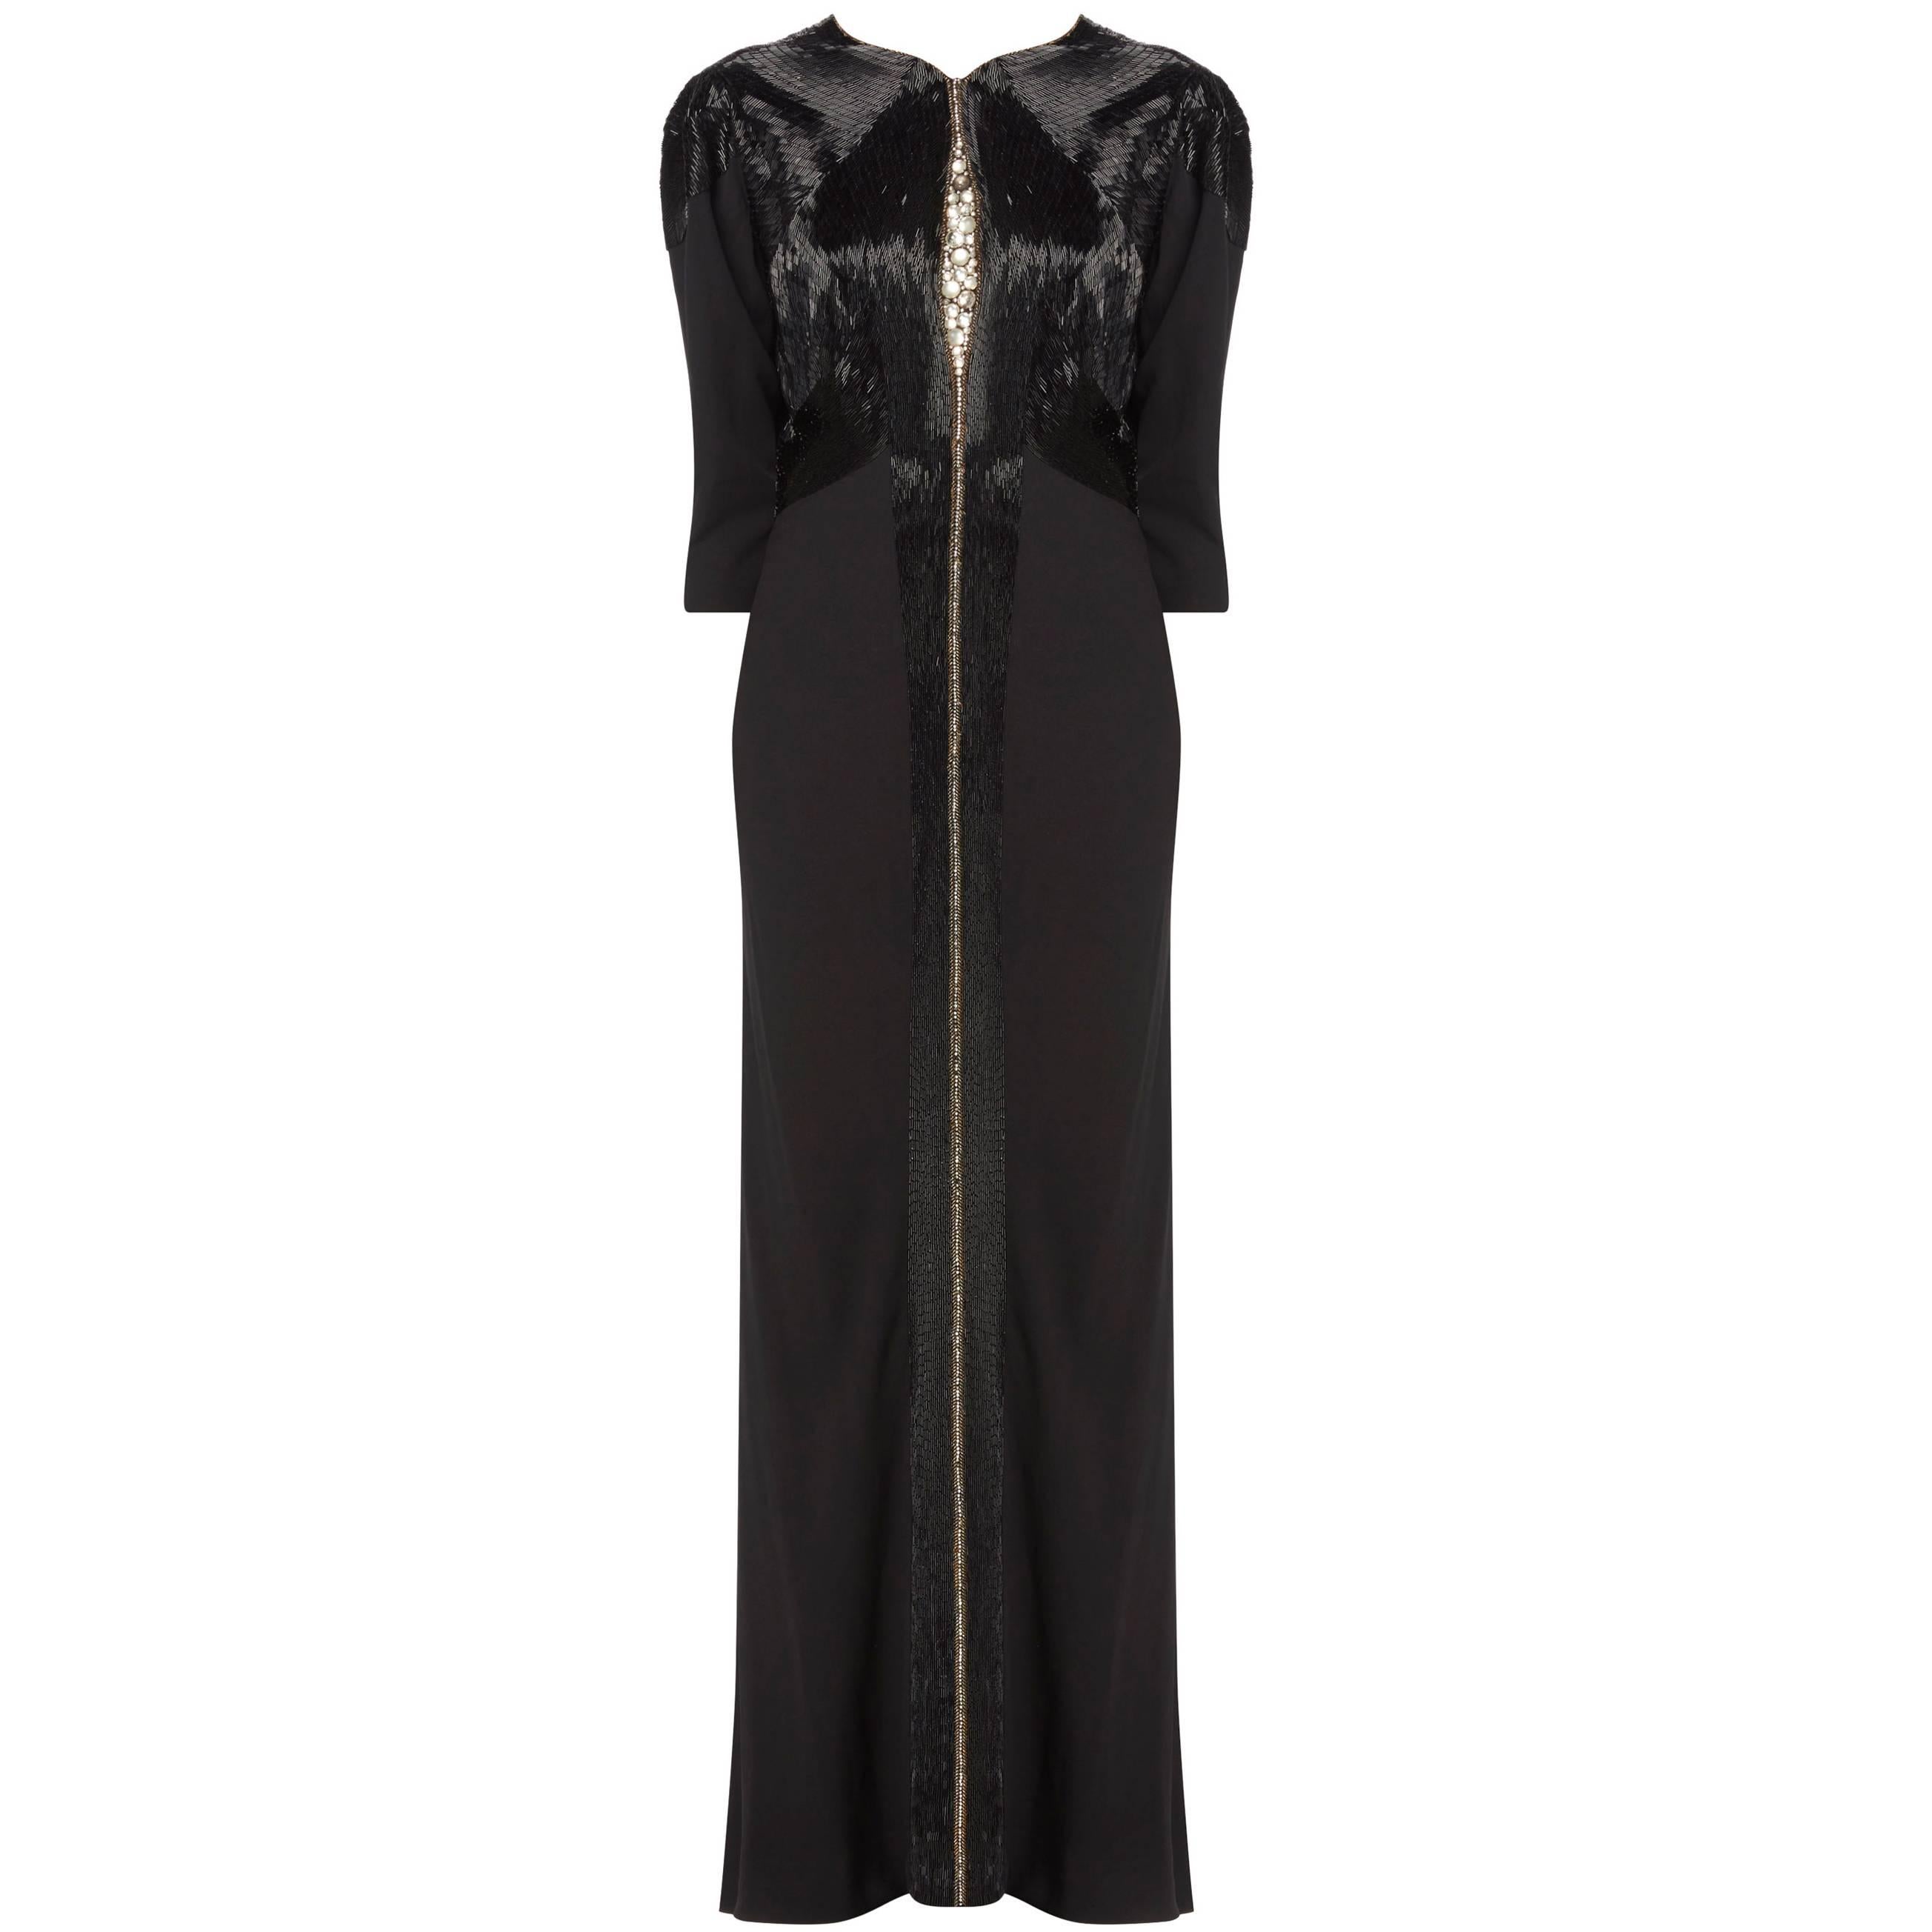 Lucien Lelong haute couture black dress, circa 1935